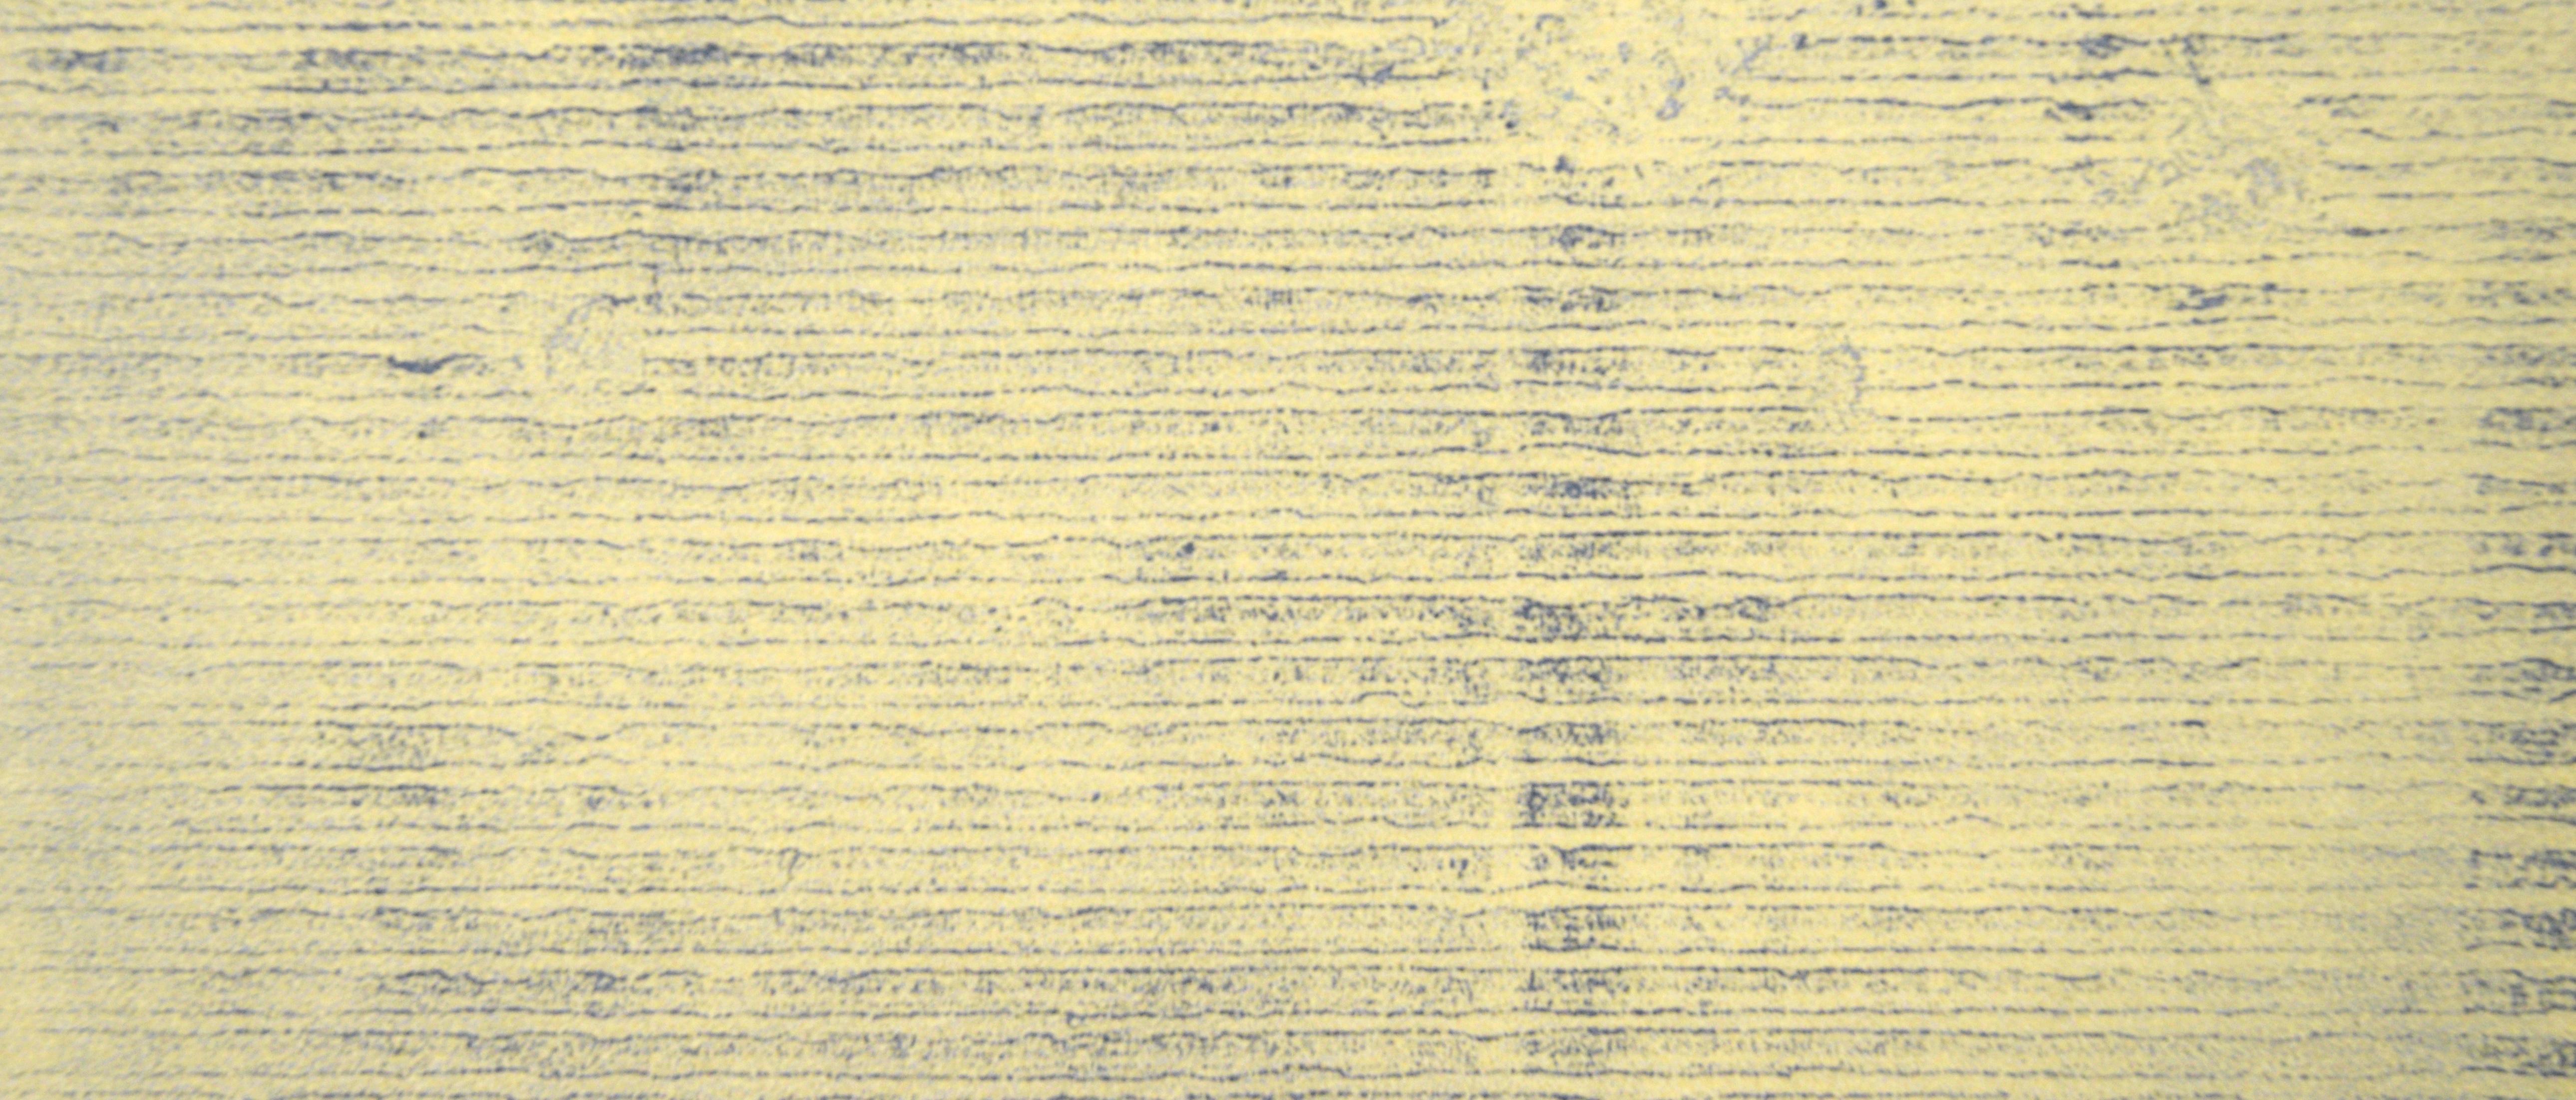 Minimalistische Transfer-Monogramm-Monogramm in Öl auf Papier, Not Quite Green

Original handgemalte und übertragene Monotypie der kalifornischen Künstlerin Heather Speck (Amerikanerin, 20. Jh.). Eine gelbe Schicht im Hintergrund wird von blauen